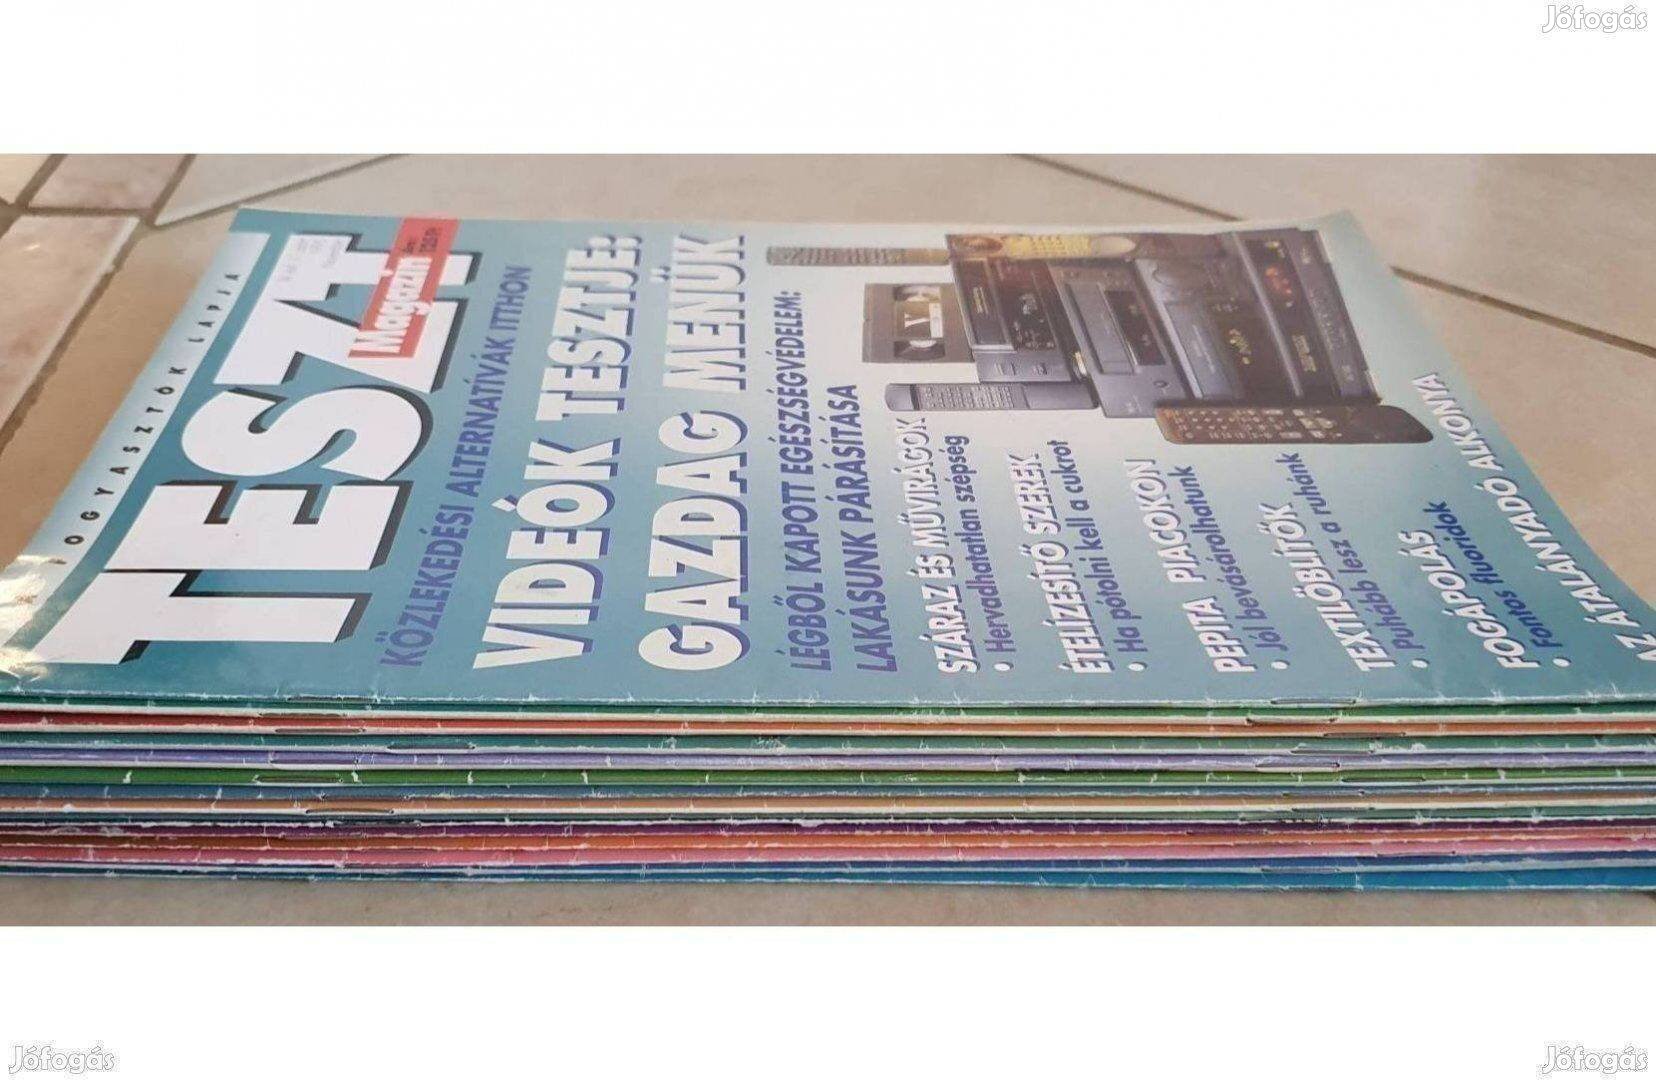 14 db retró újság Teszt Magazin gyűjtemény egyben 1993-1996